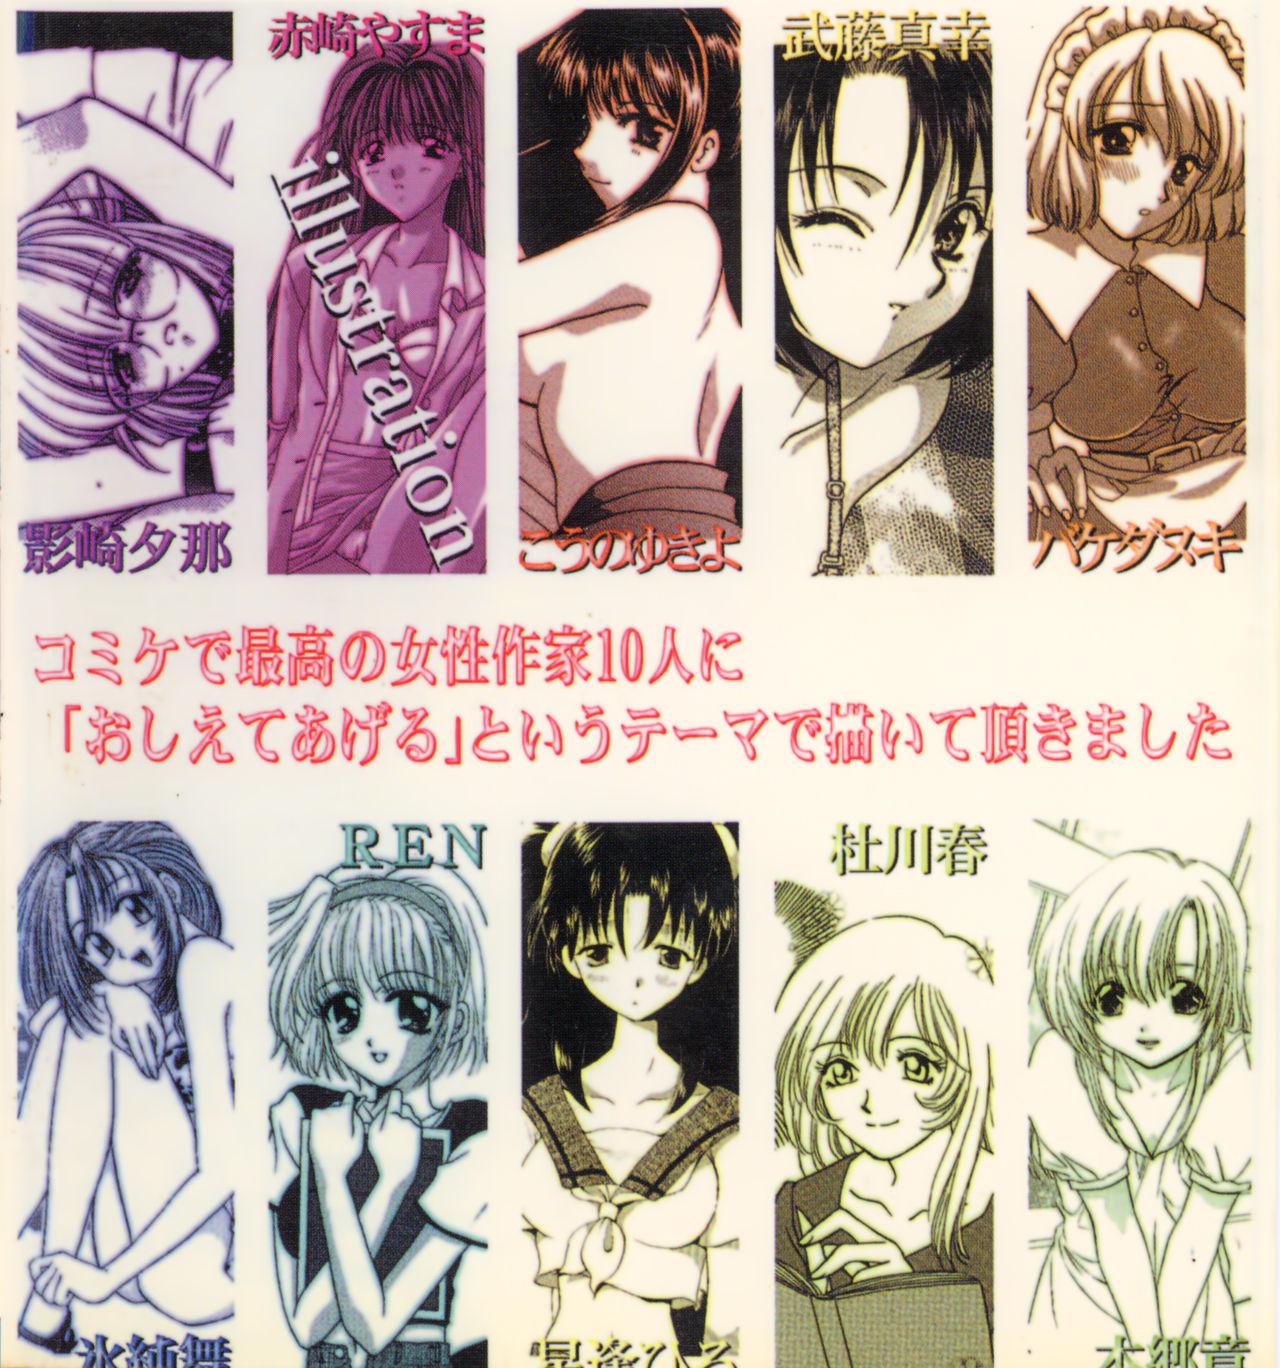 RAN-MAN Vol. 1 Josei Sakka Anthology 1